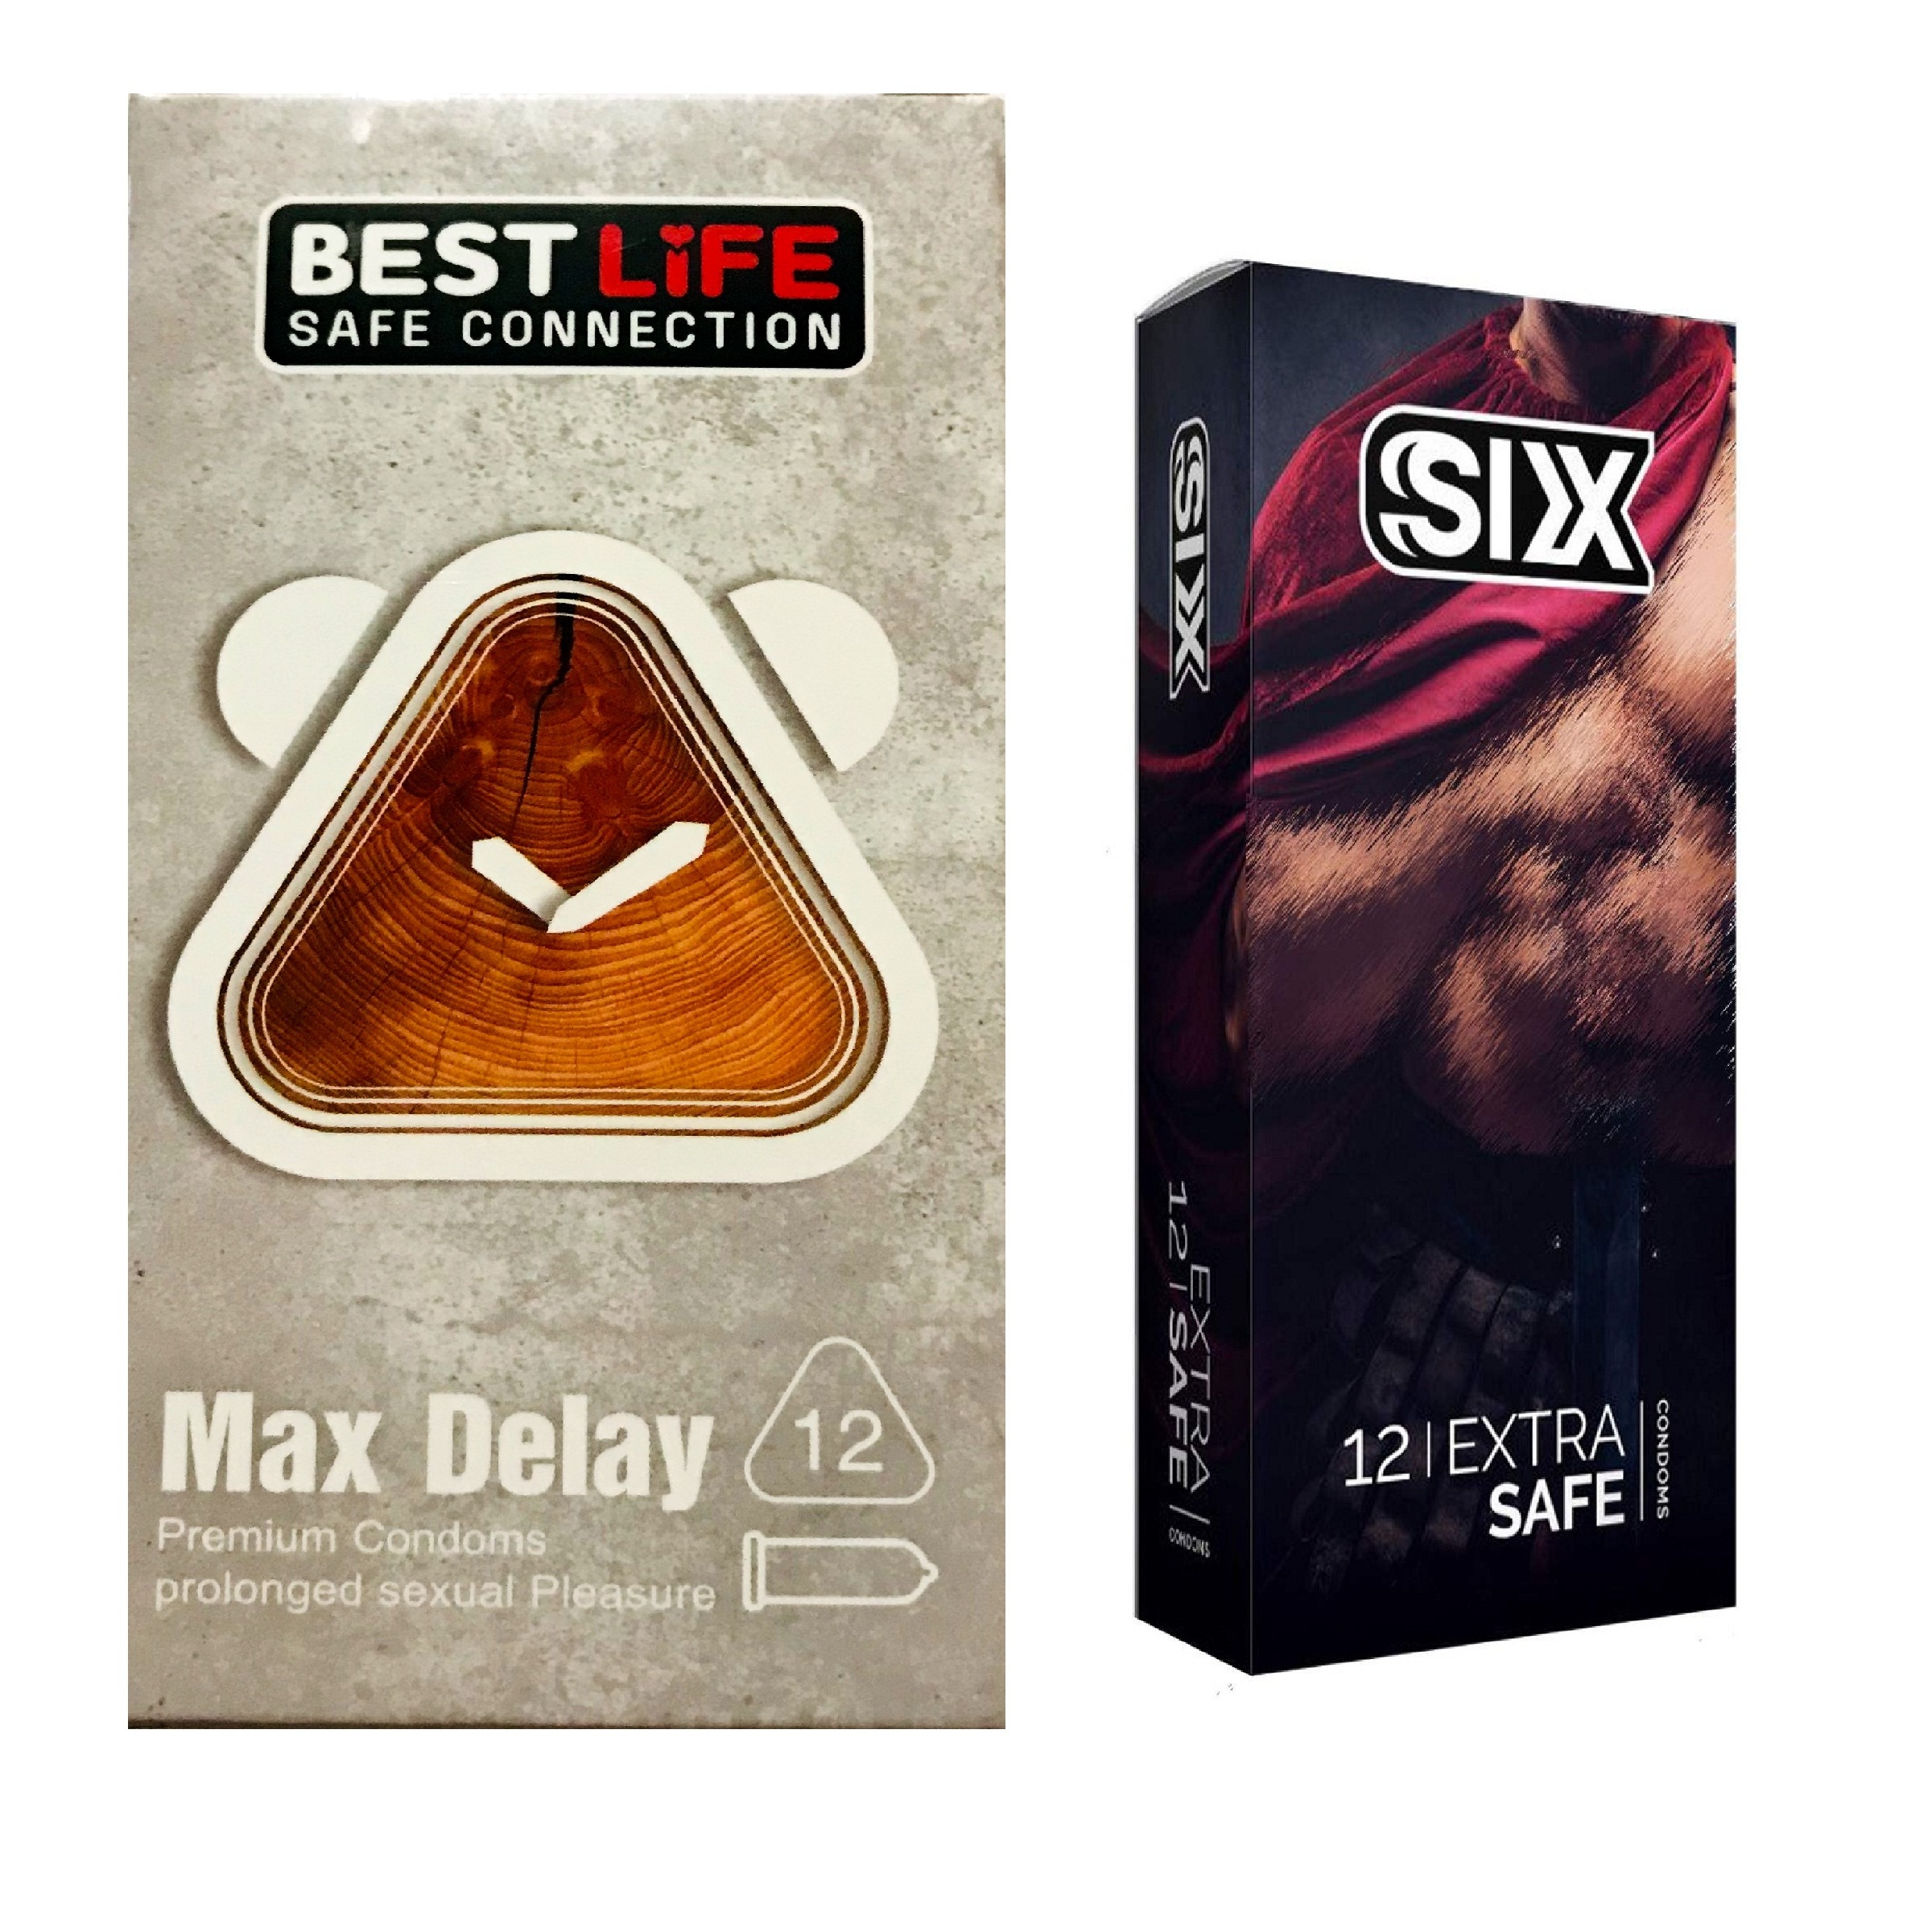 کاندوم بست لایف مدل Max Delay بسته 12 عددی به همراه کاندوم سیکس مدل Max Safety بسته 12 عددی